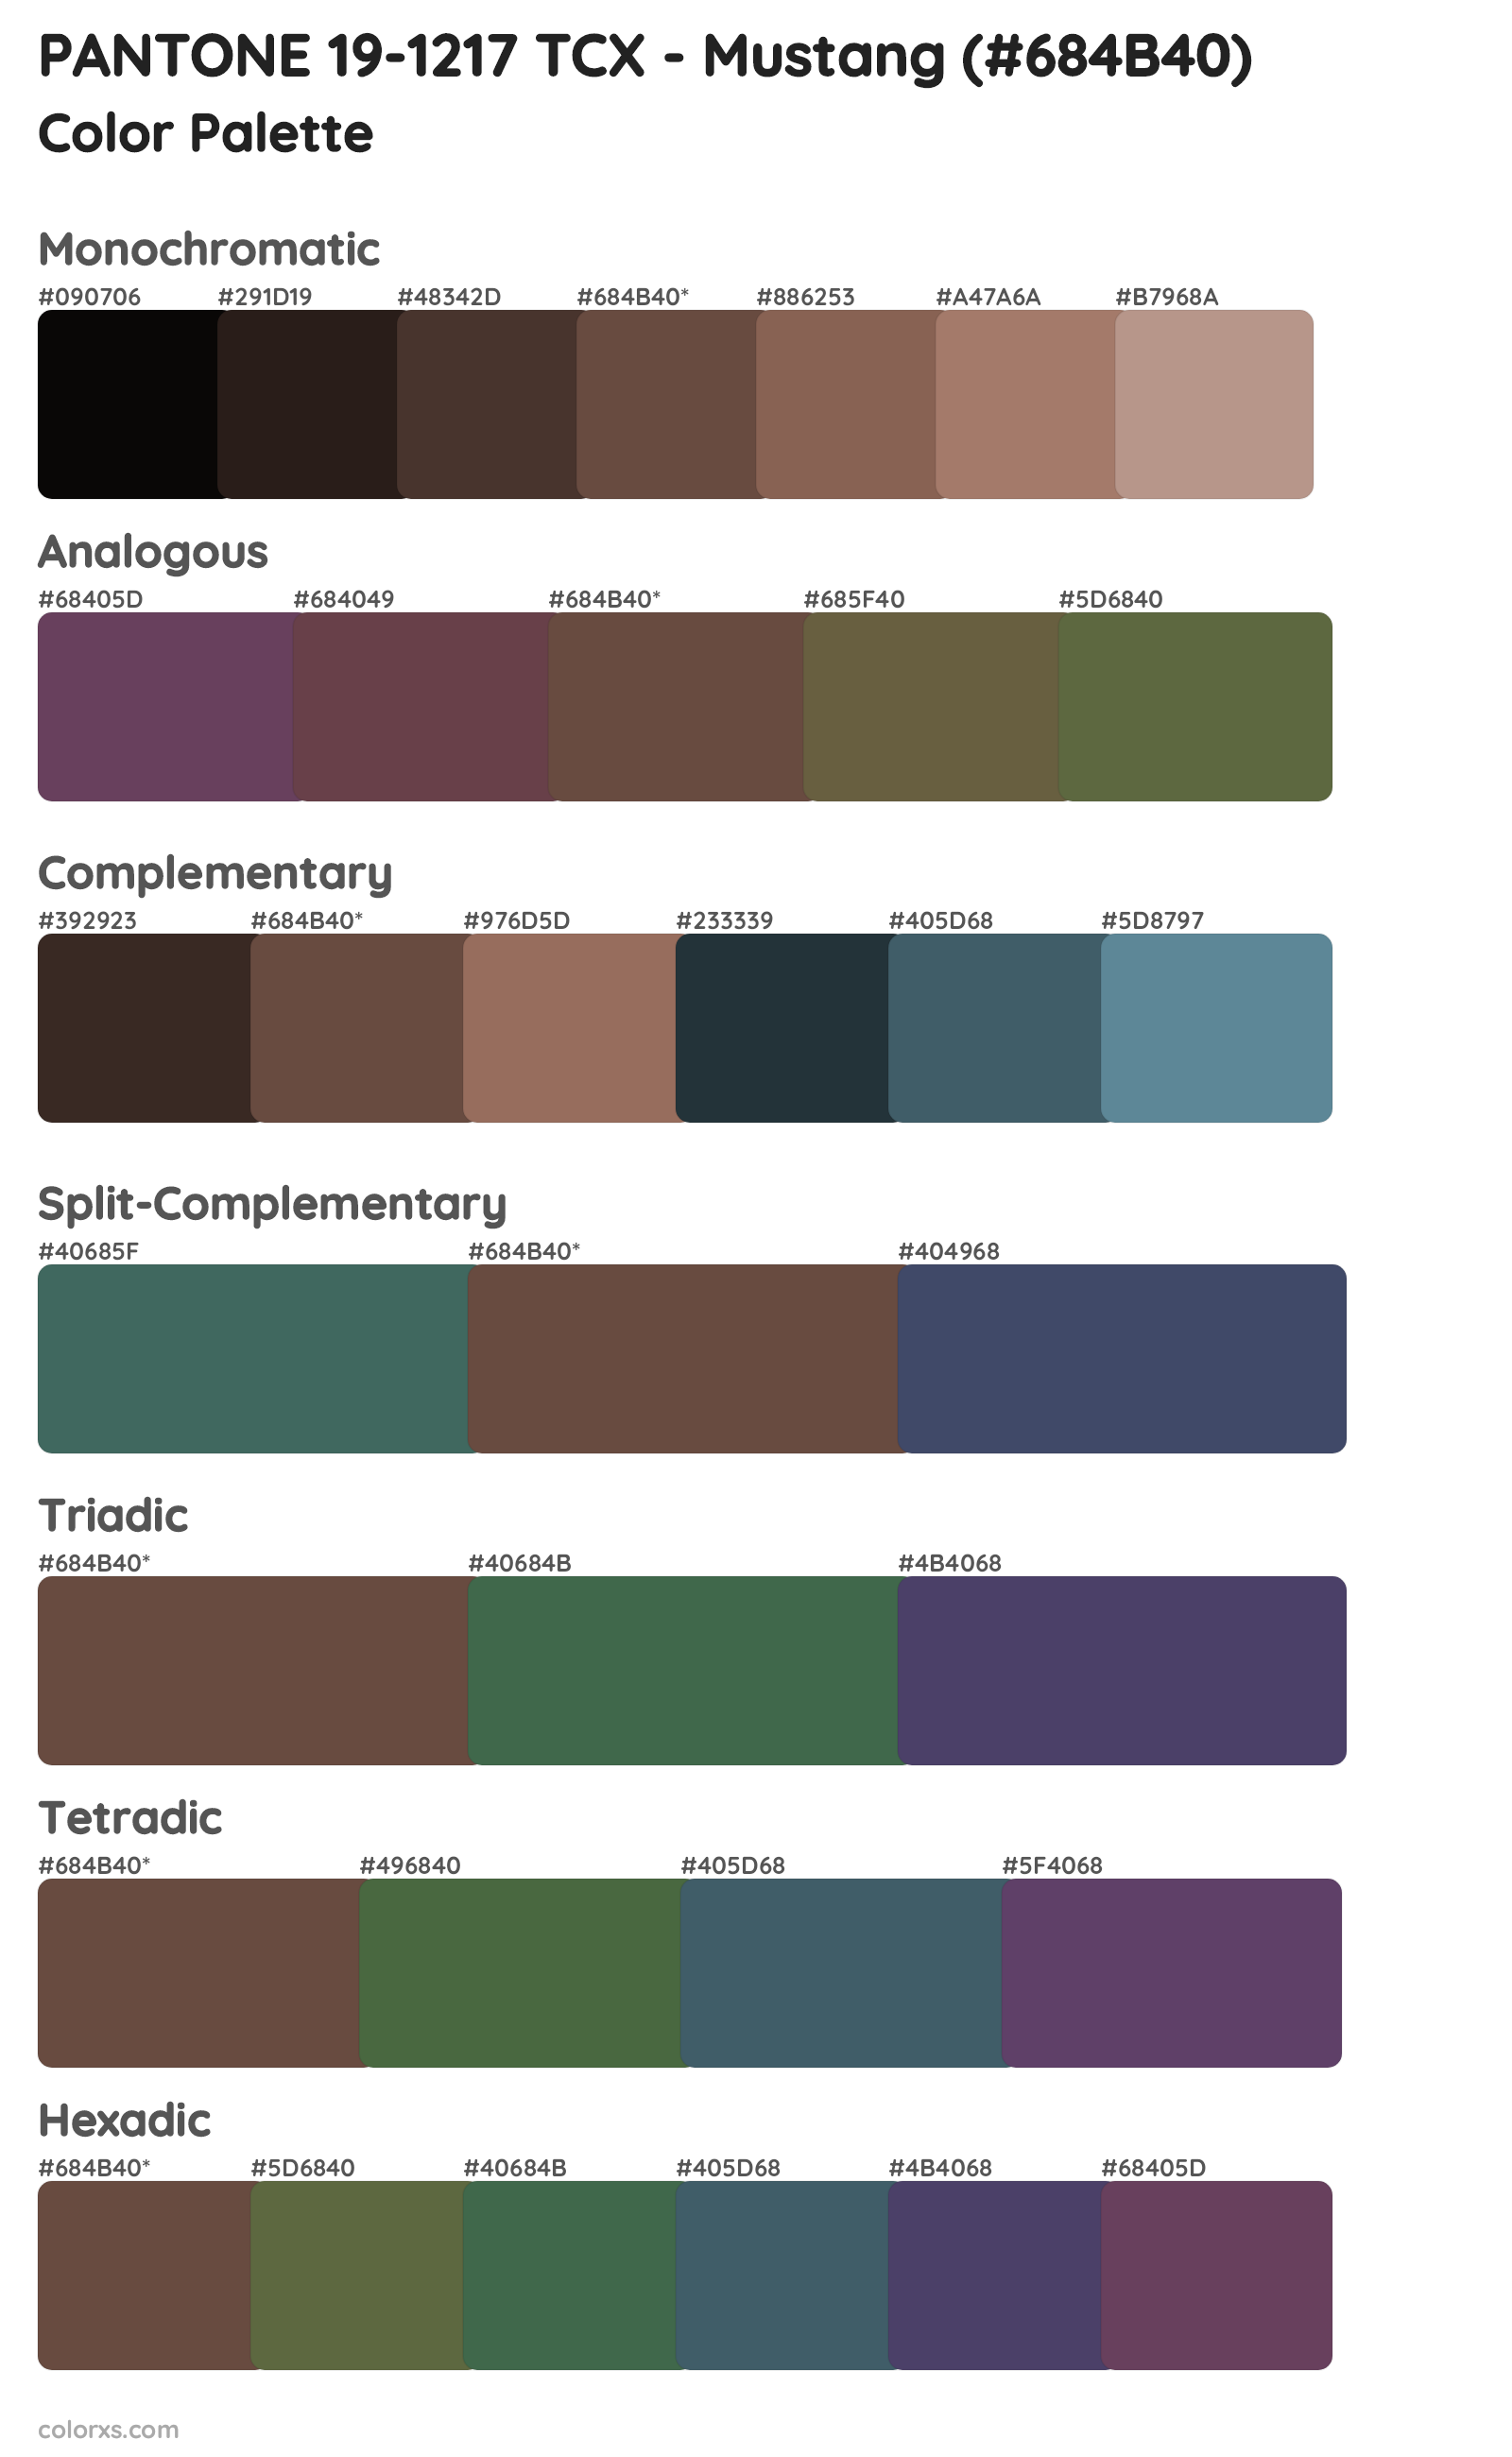 PANTONE 19-1217 TCX - Mustang Color Scheme Palettes